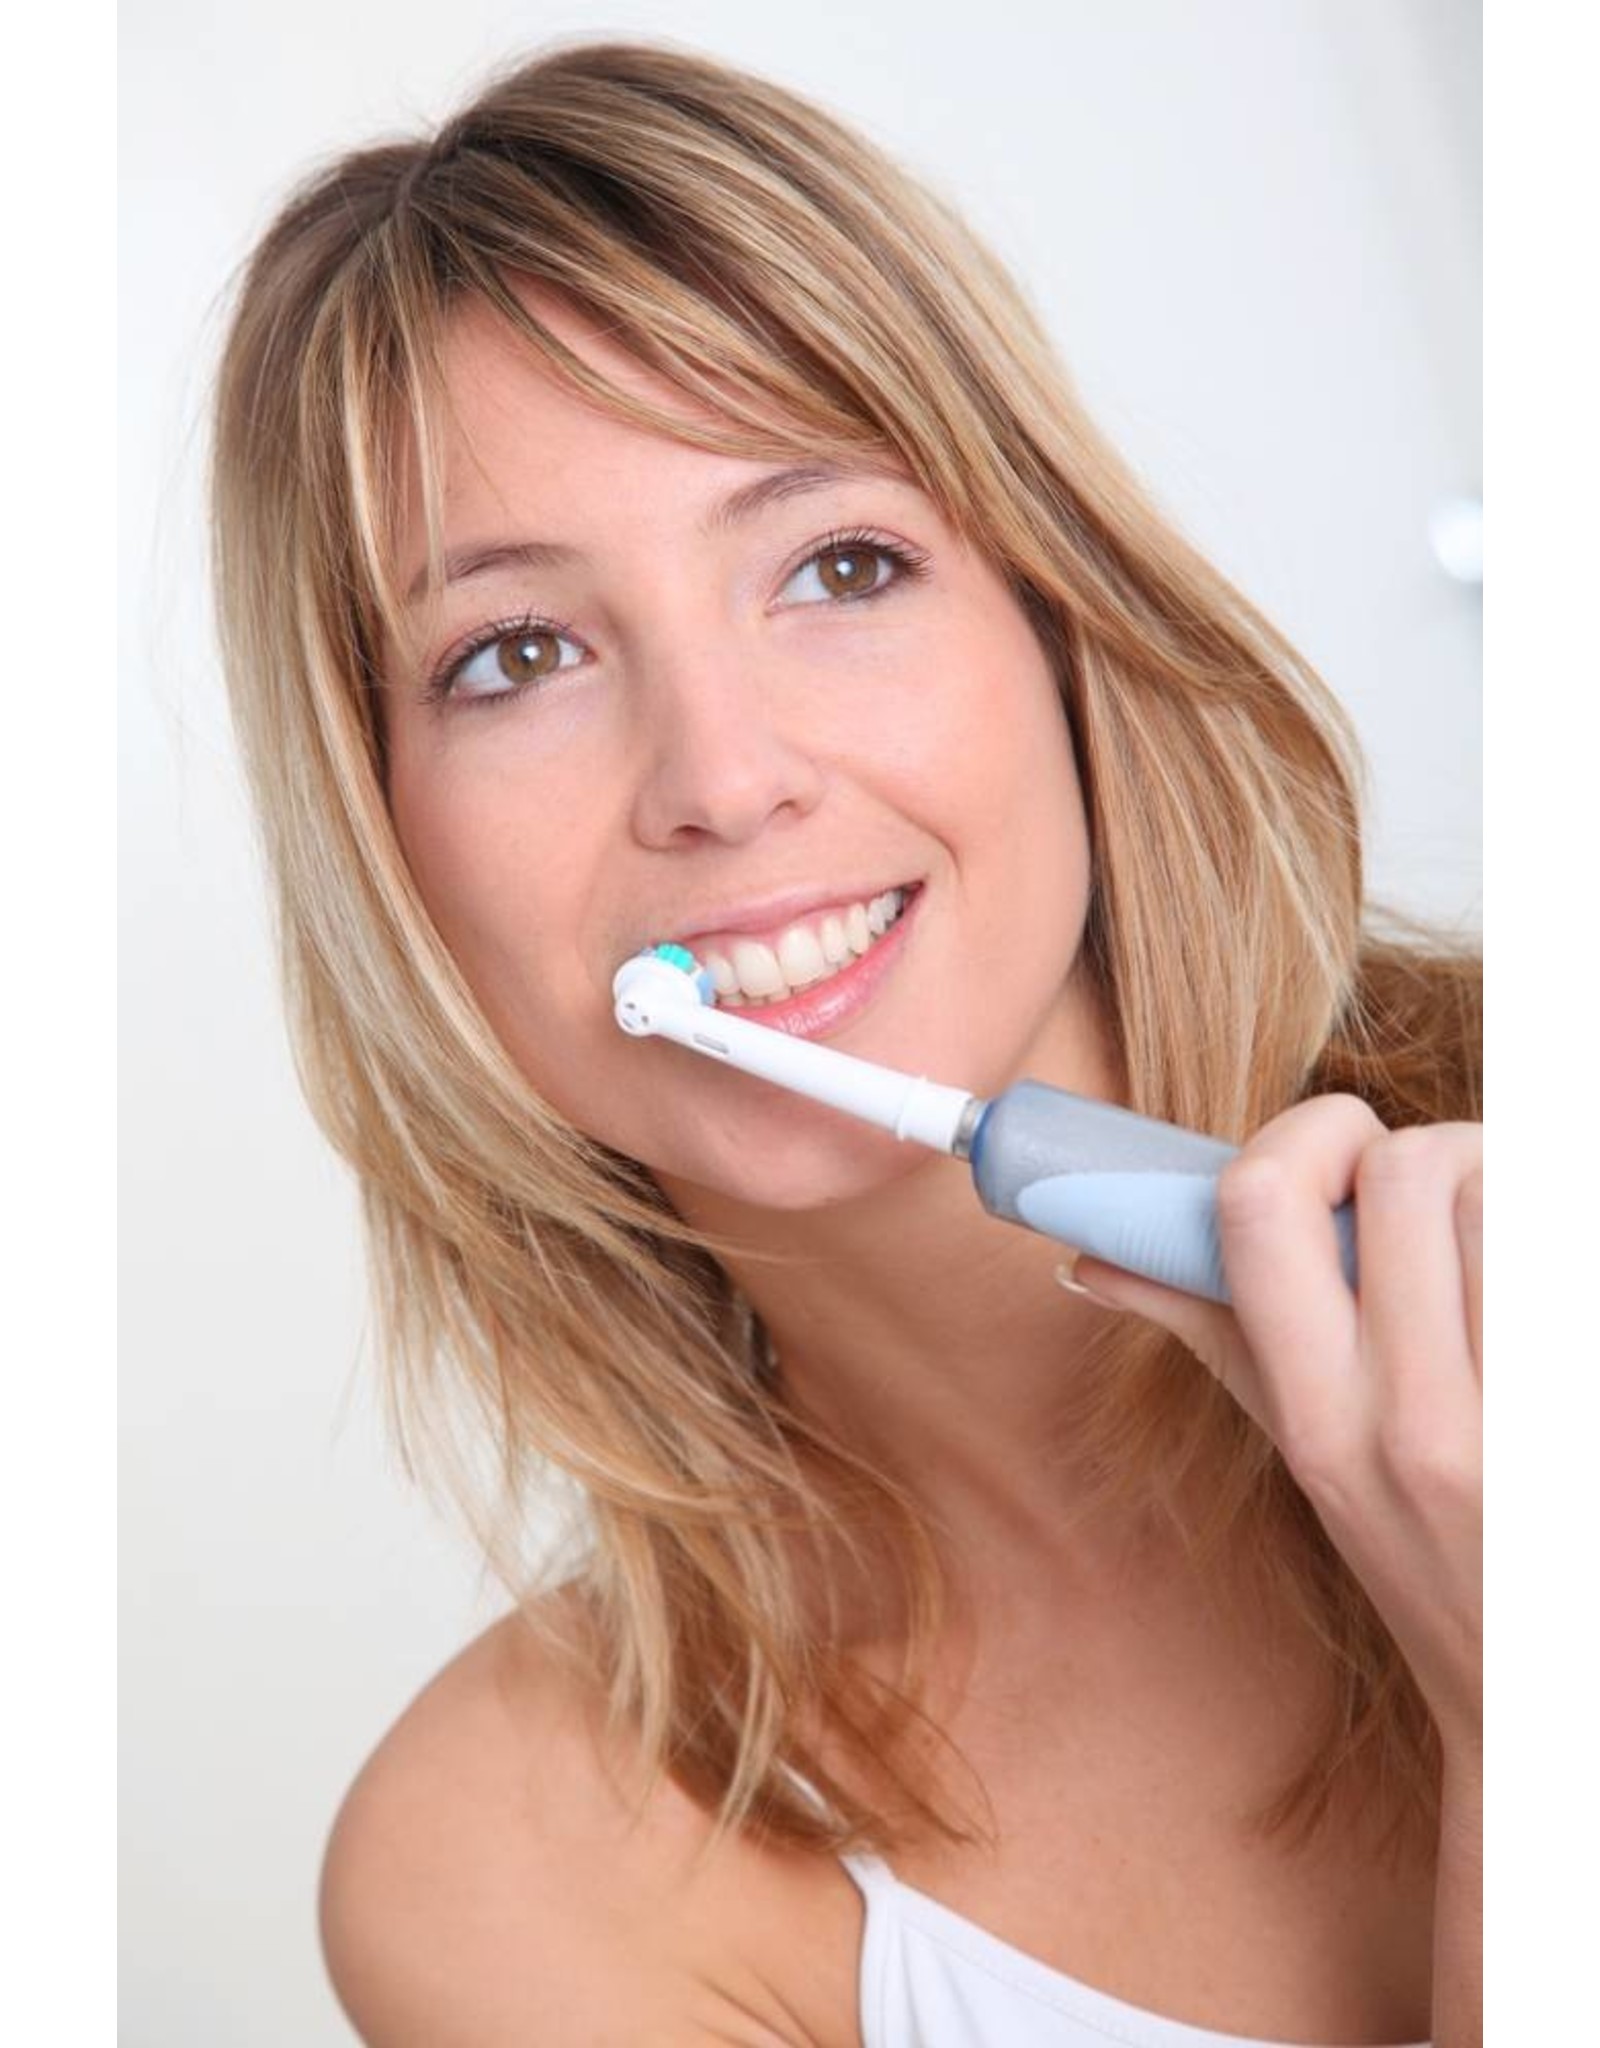 8 Aufsteckbürsten für elektrische Zahnbürsten von Oral-B  von Braun  Ersatzbürsten Aufsätze (kostenloser Versand)